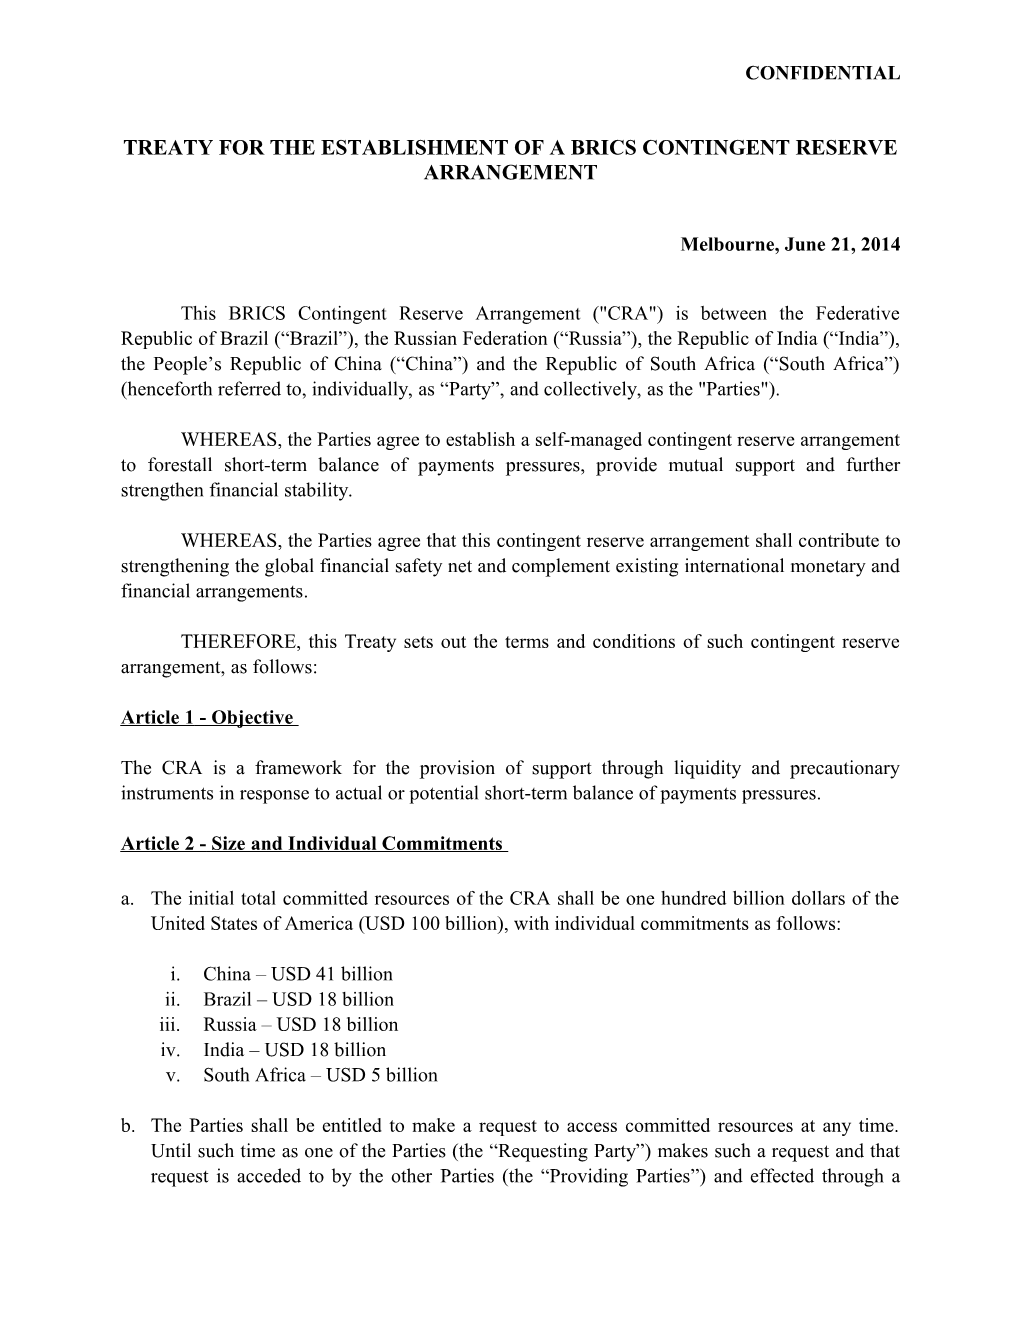 Treaty for the Establishment of a Brics Contingent Reserve Arrangement